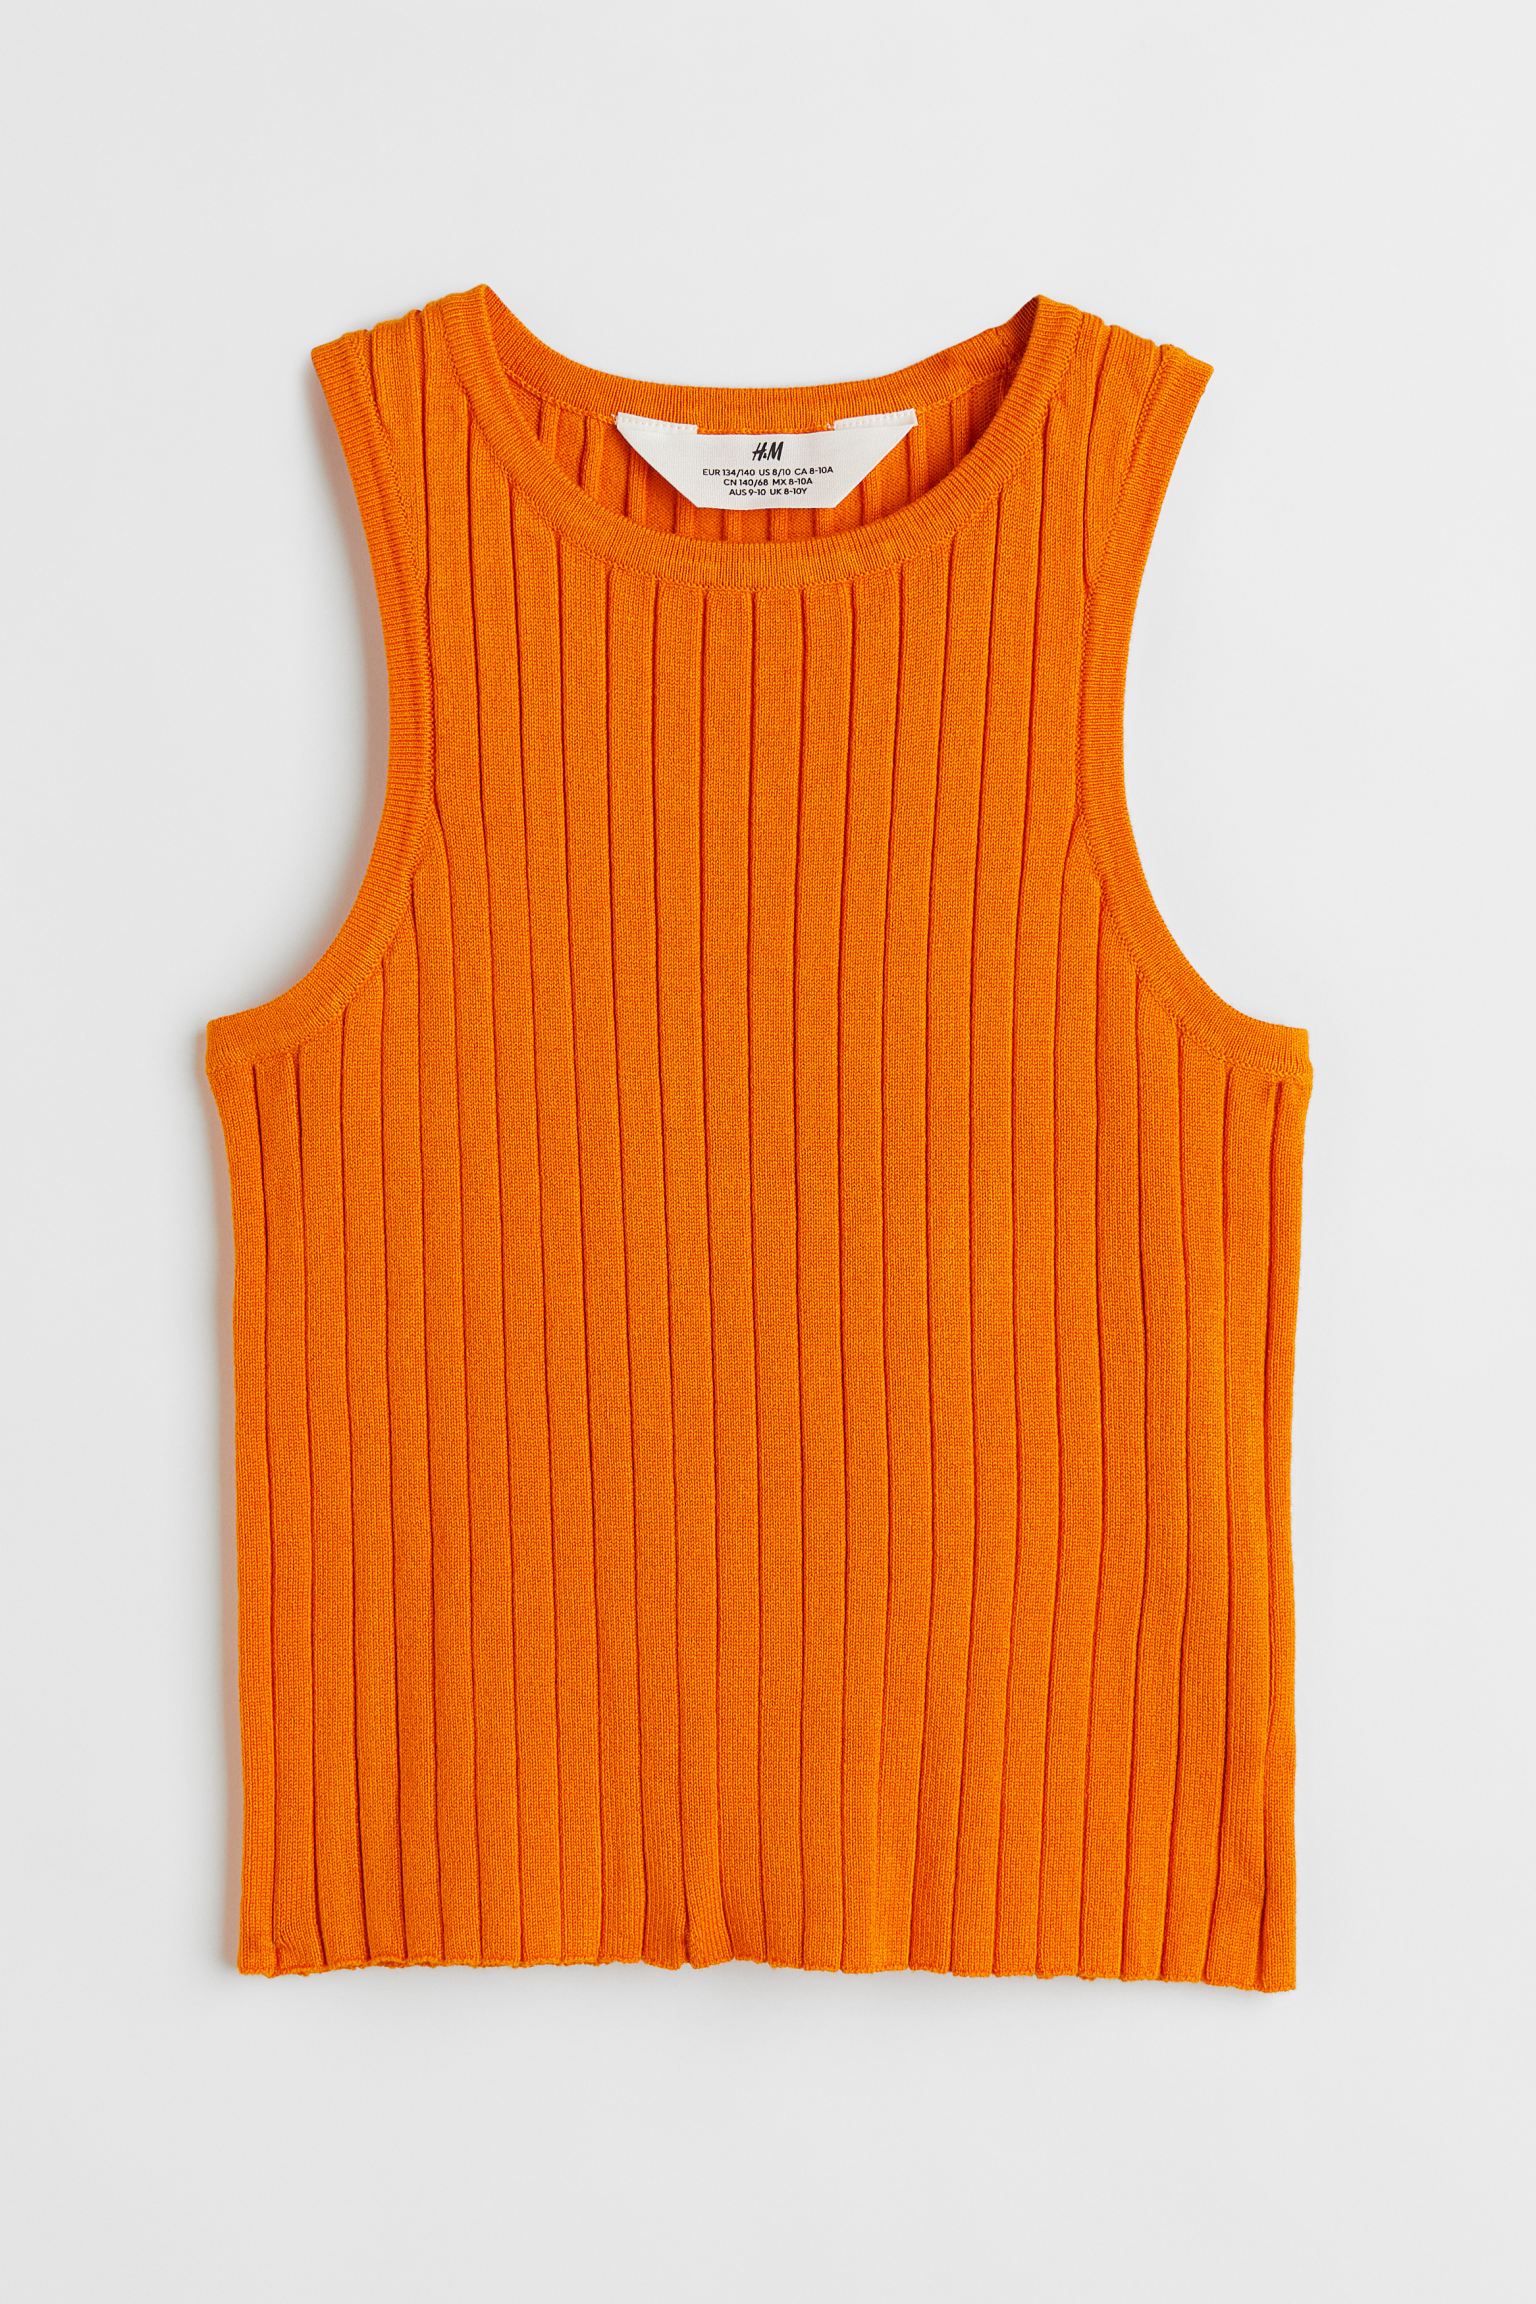 Майка H&M для девочек, оранжевый-005, размер 134/140, 1028246005 майка для мальчиков demix оранжевый